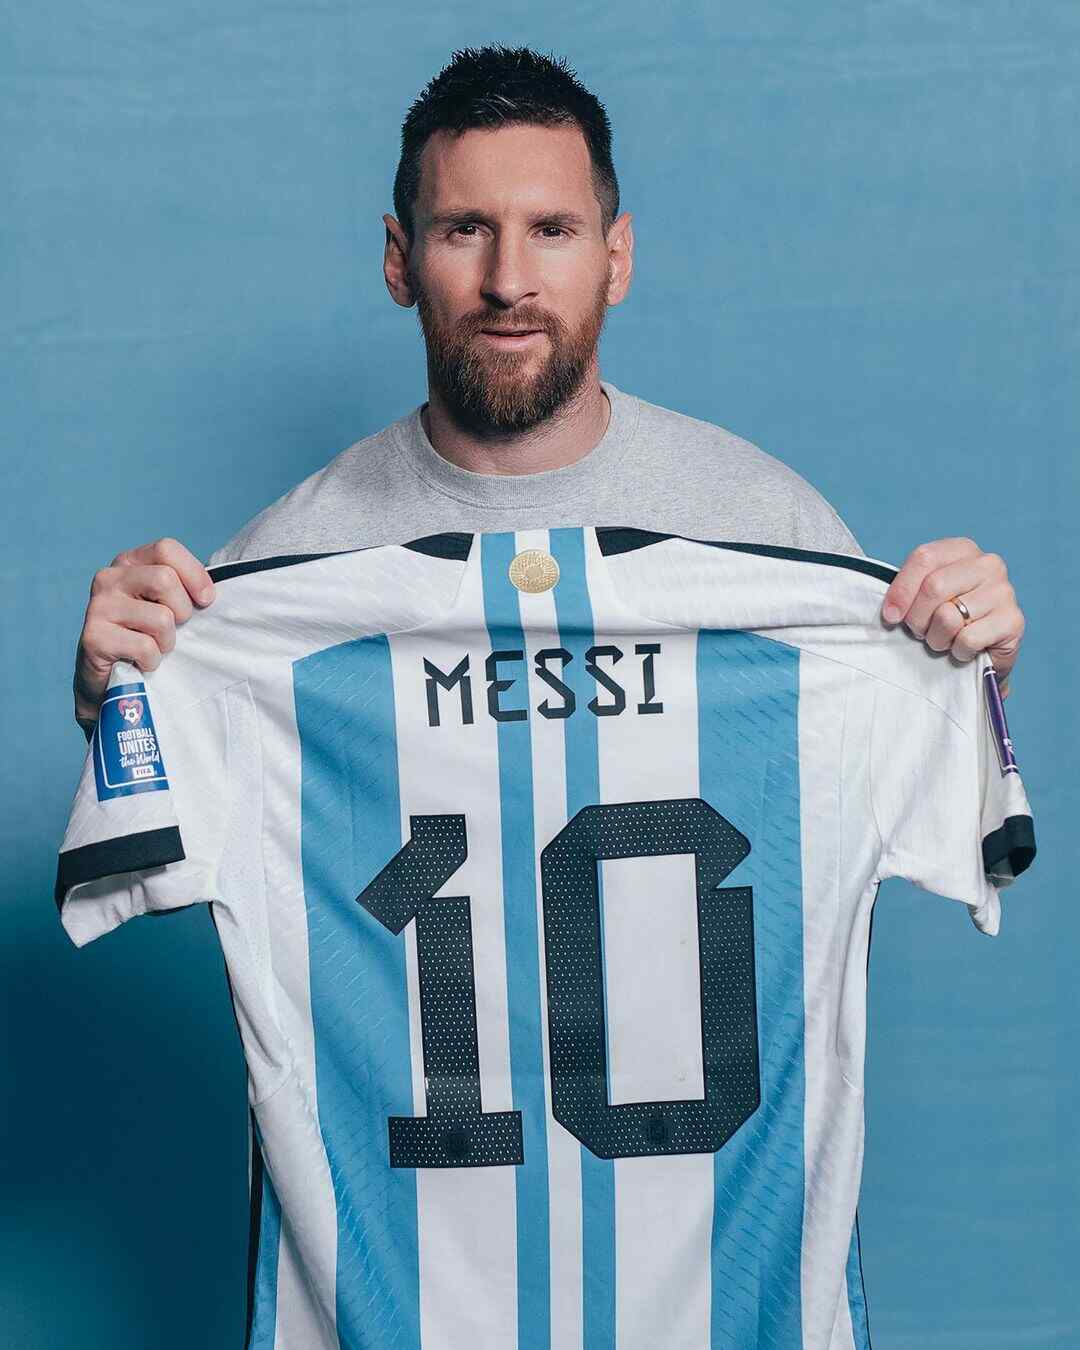 Jezi sita za Messi kuuzwa bilioni 25